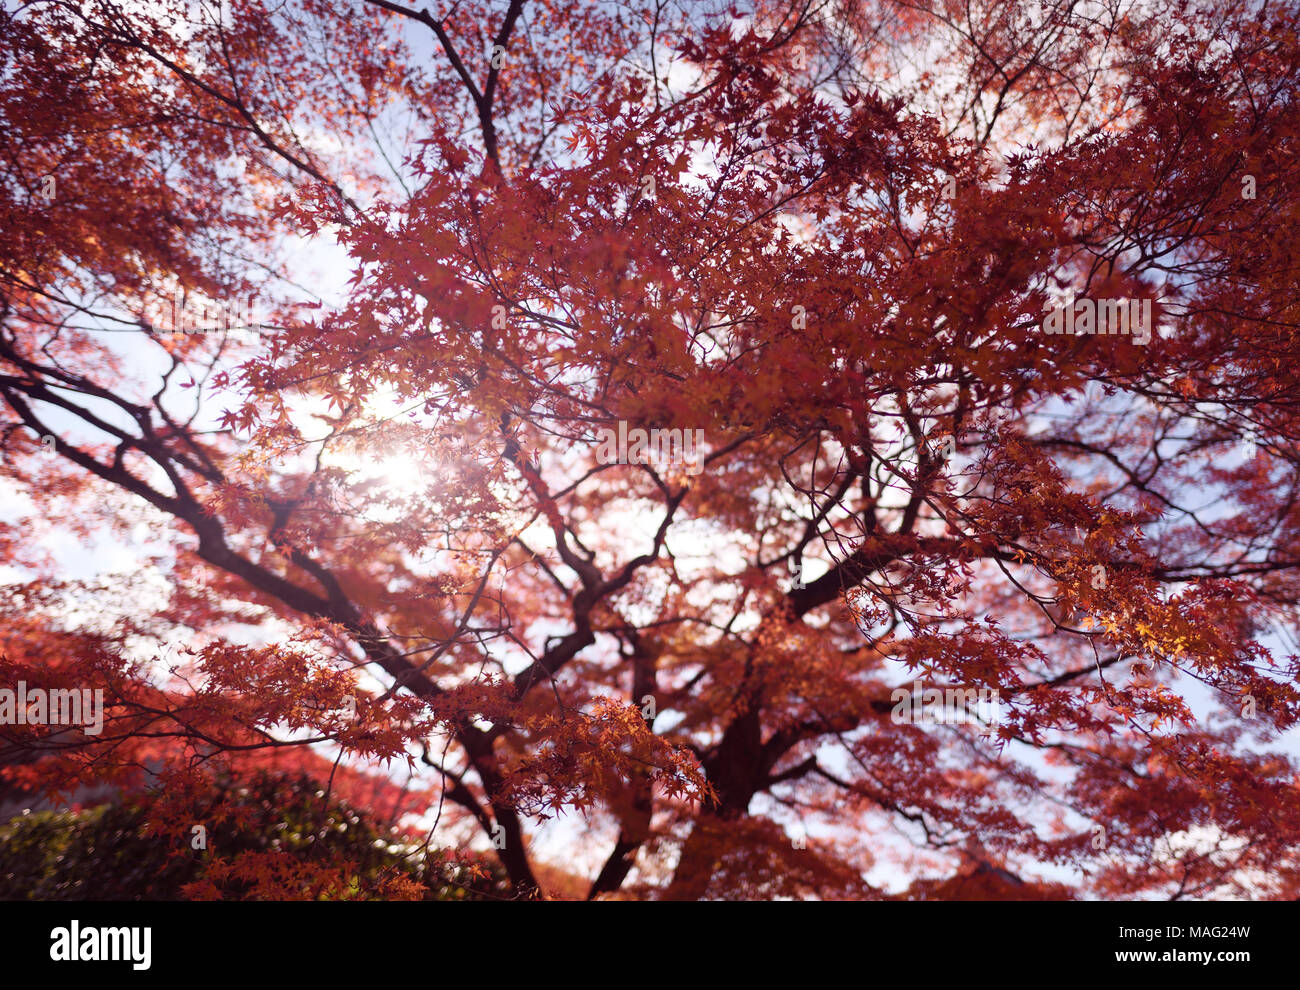 La luz del sol brillando a través de hojas rojas de una guapa japonesa maple, Acer palmatum, en el paisaje del otoño en Kyoto, Japón Foto de stock